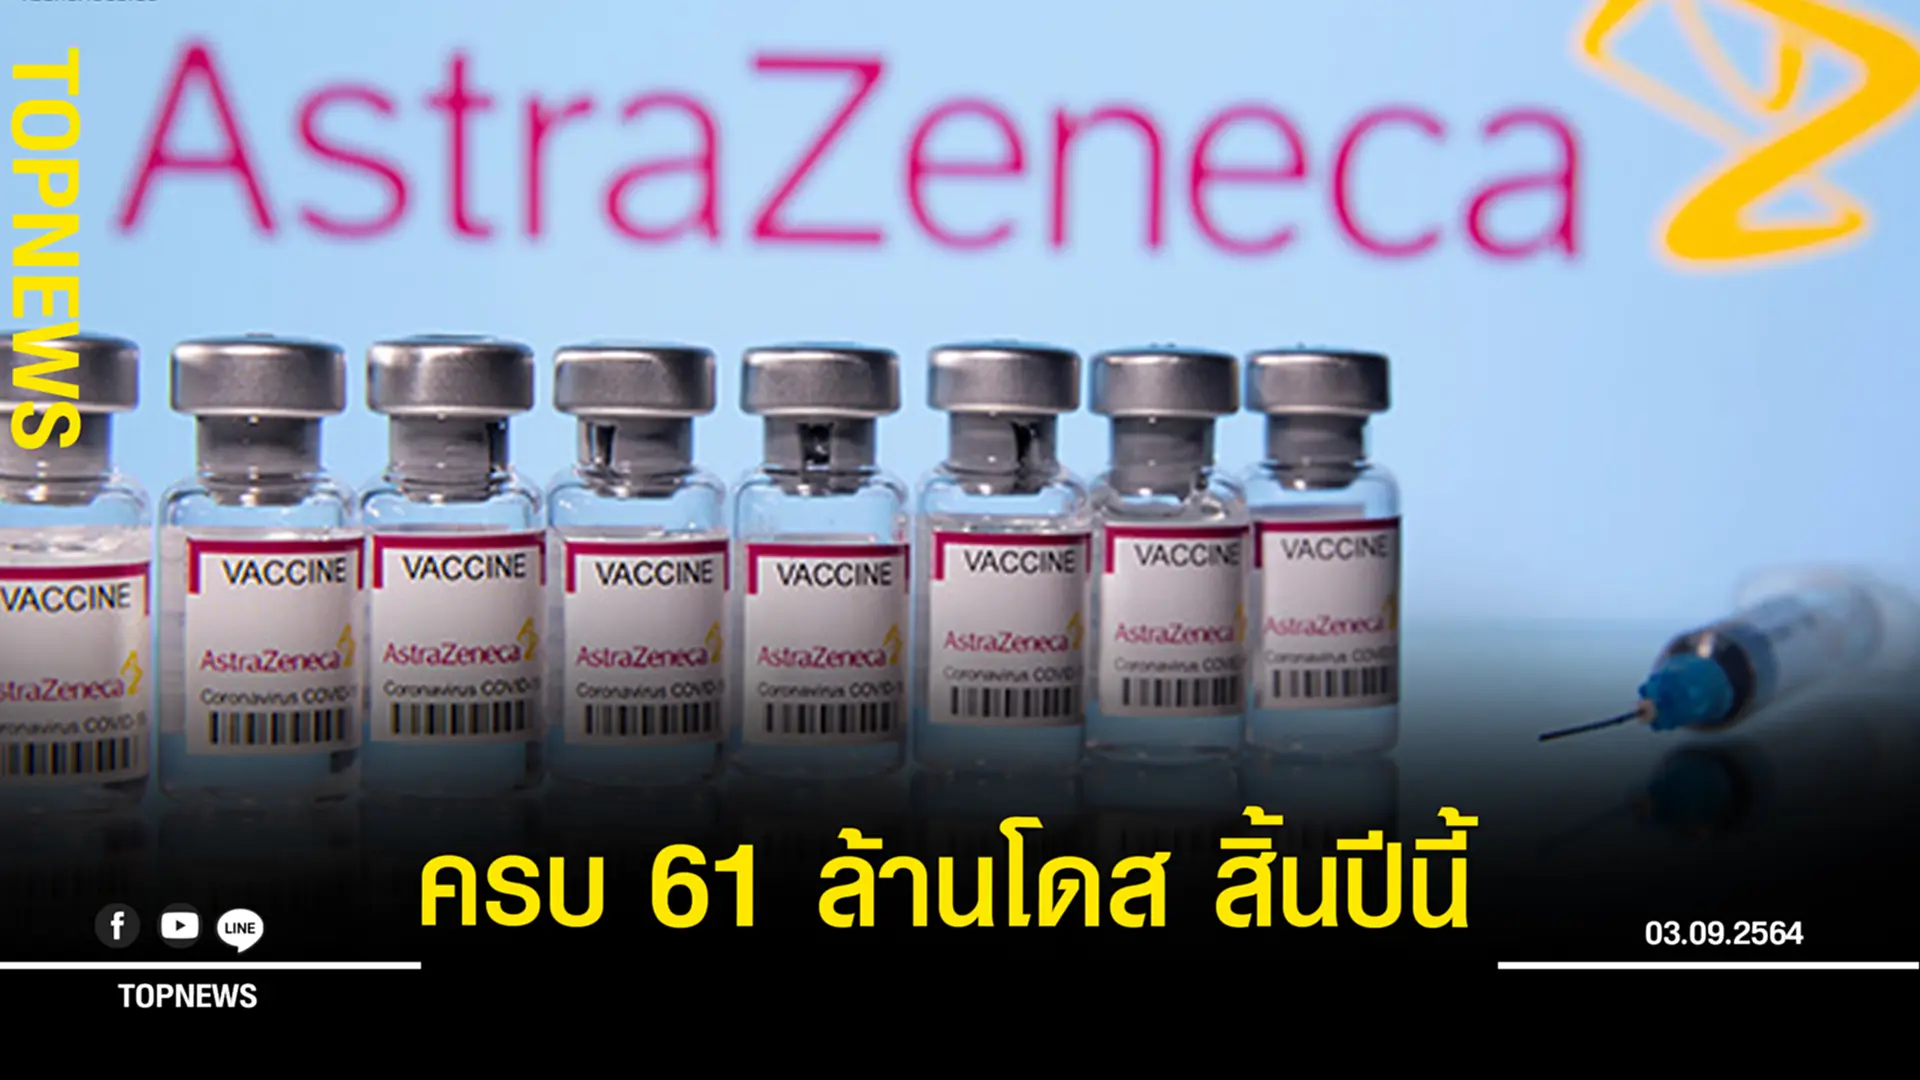 แอสตร้าฯ เผยความคืบหน้า ส่งมอบวัคซีนให้ไทย คาดครบ 61 ล้านโดส ภายในสิ้นปีนี้!